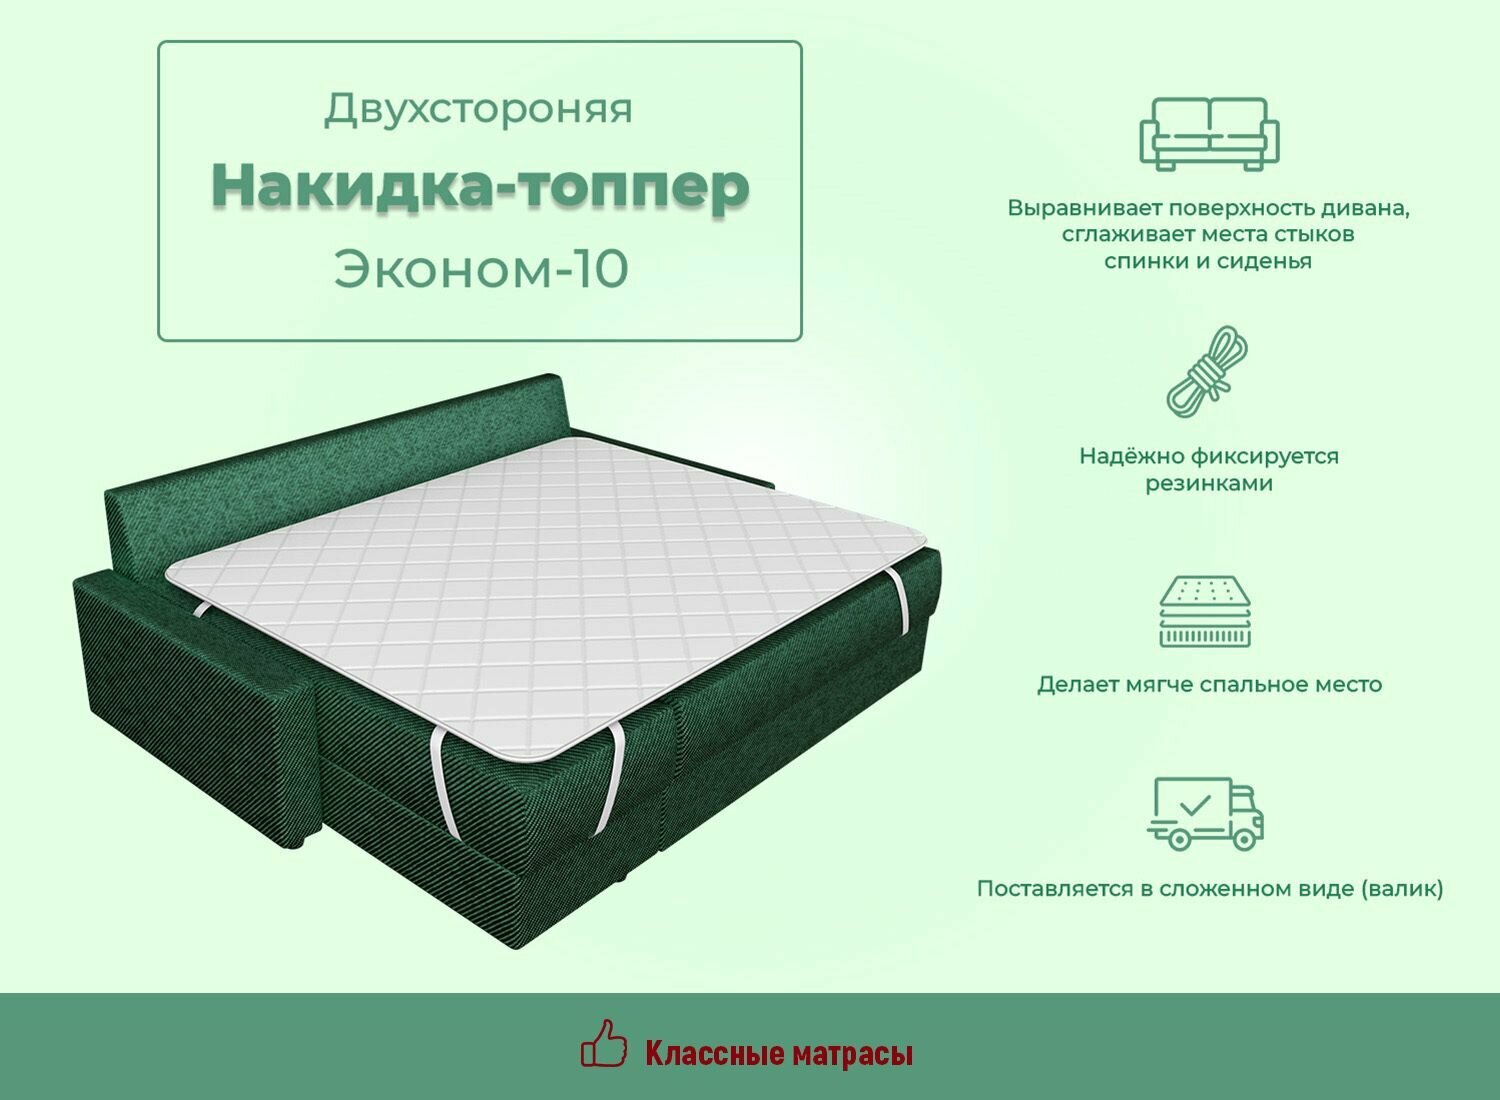 Топпер накидка матрас ECONOM10 высота 3см на диван кровать матрас поролон стеганый сатин (70 / 195)